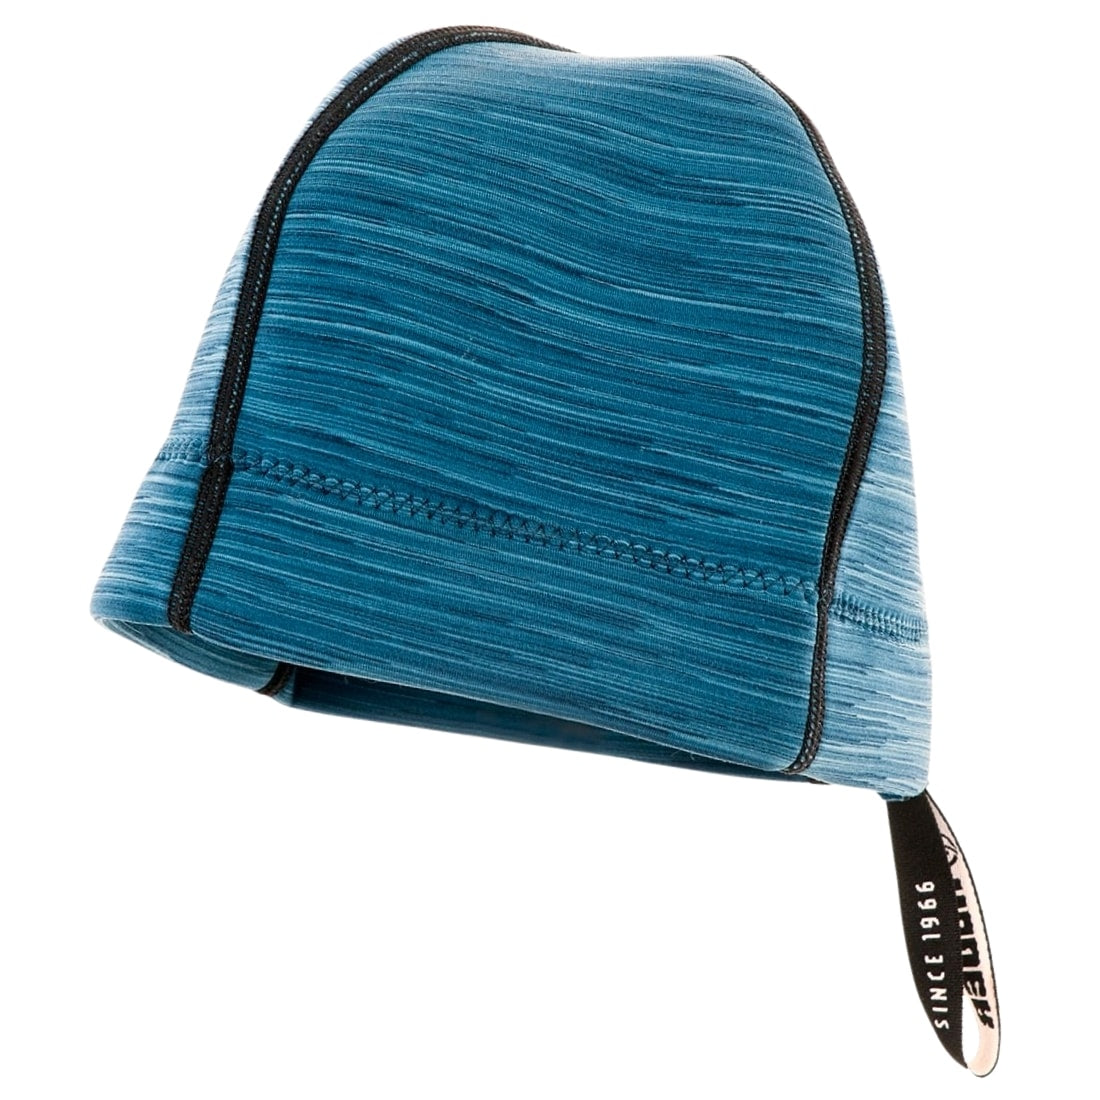 Alder 2mm Beanie Surf Hat - Blue - Wetsuit Hood/Cap by Alder